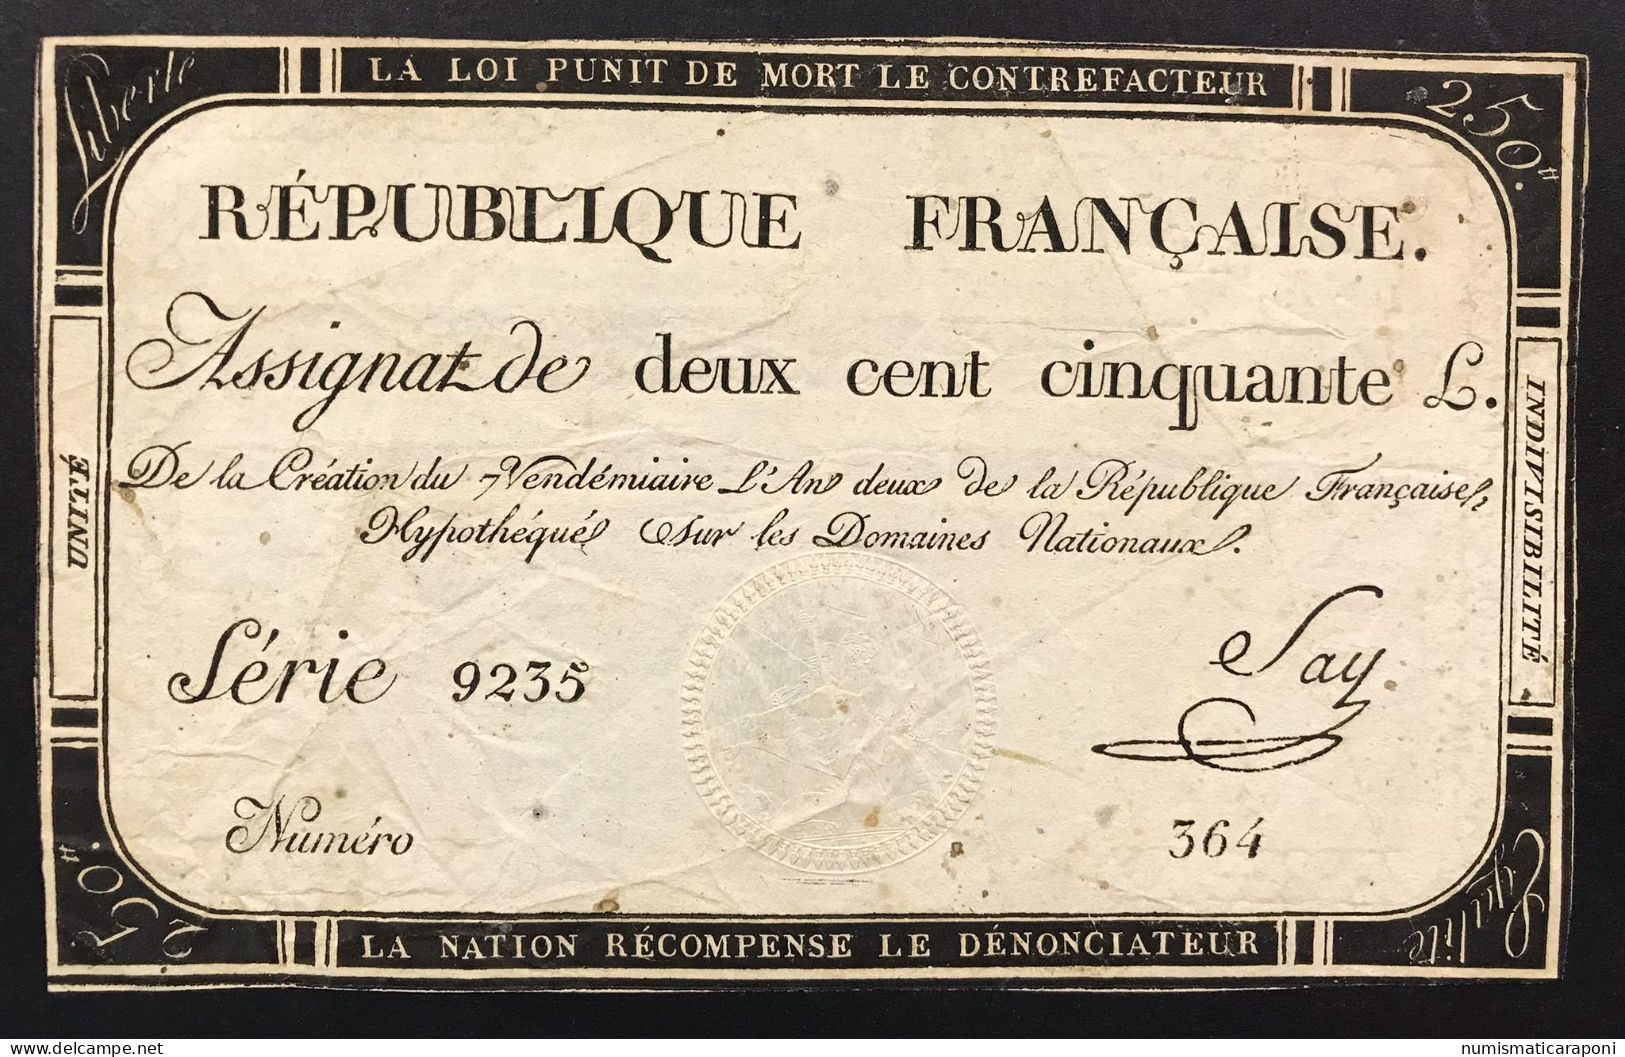 Francia France Assignat De 250 Livres  Lotto.1577 - ...-1889 Tijdens De XIXde In Omloop